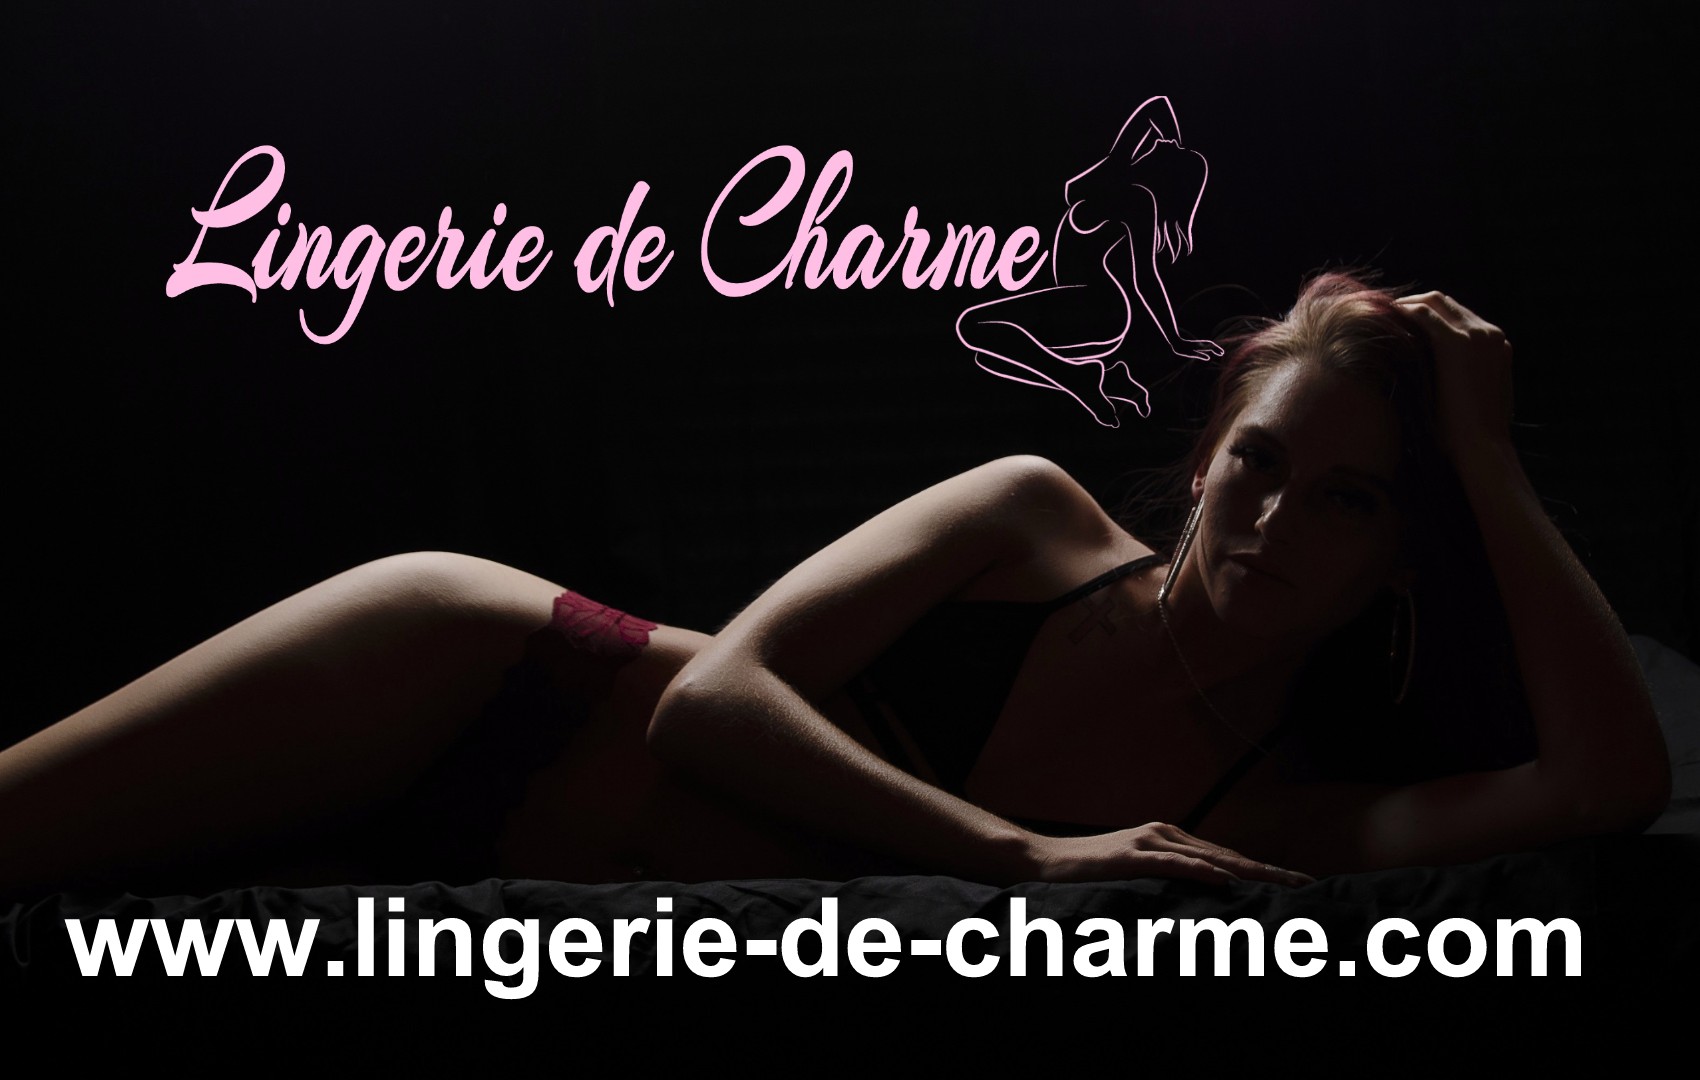 LINGERIE DE CHARME SAINT-CLAUD 16 - LINGERIE SEXY SAINT-CLAUD 16